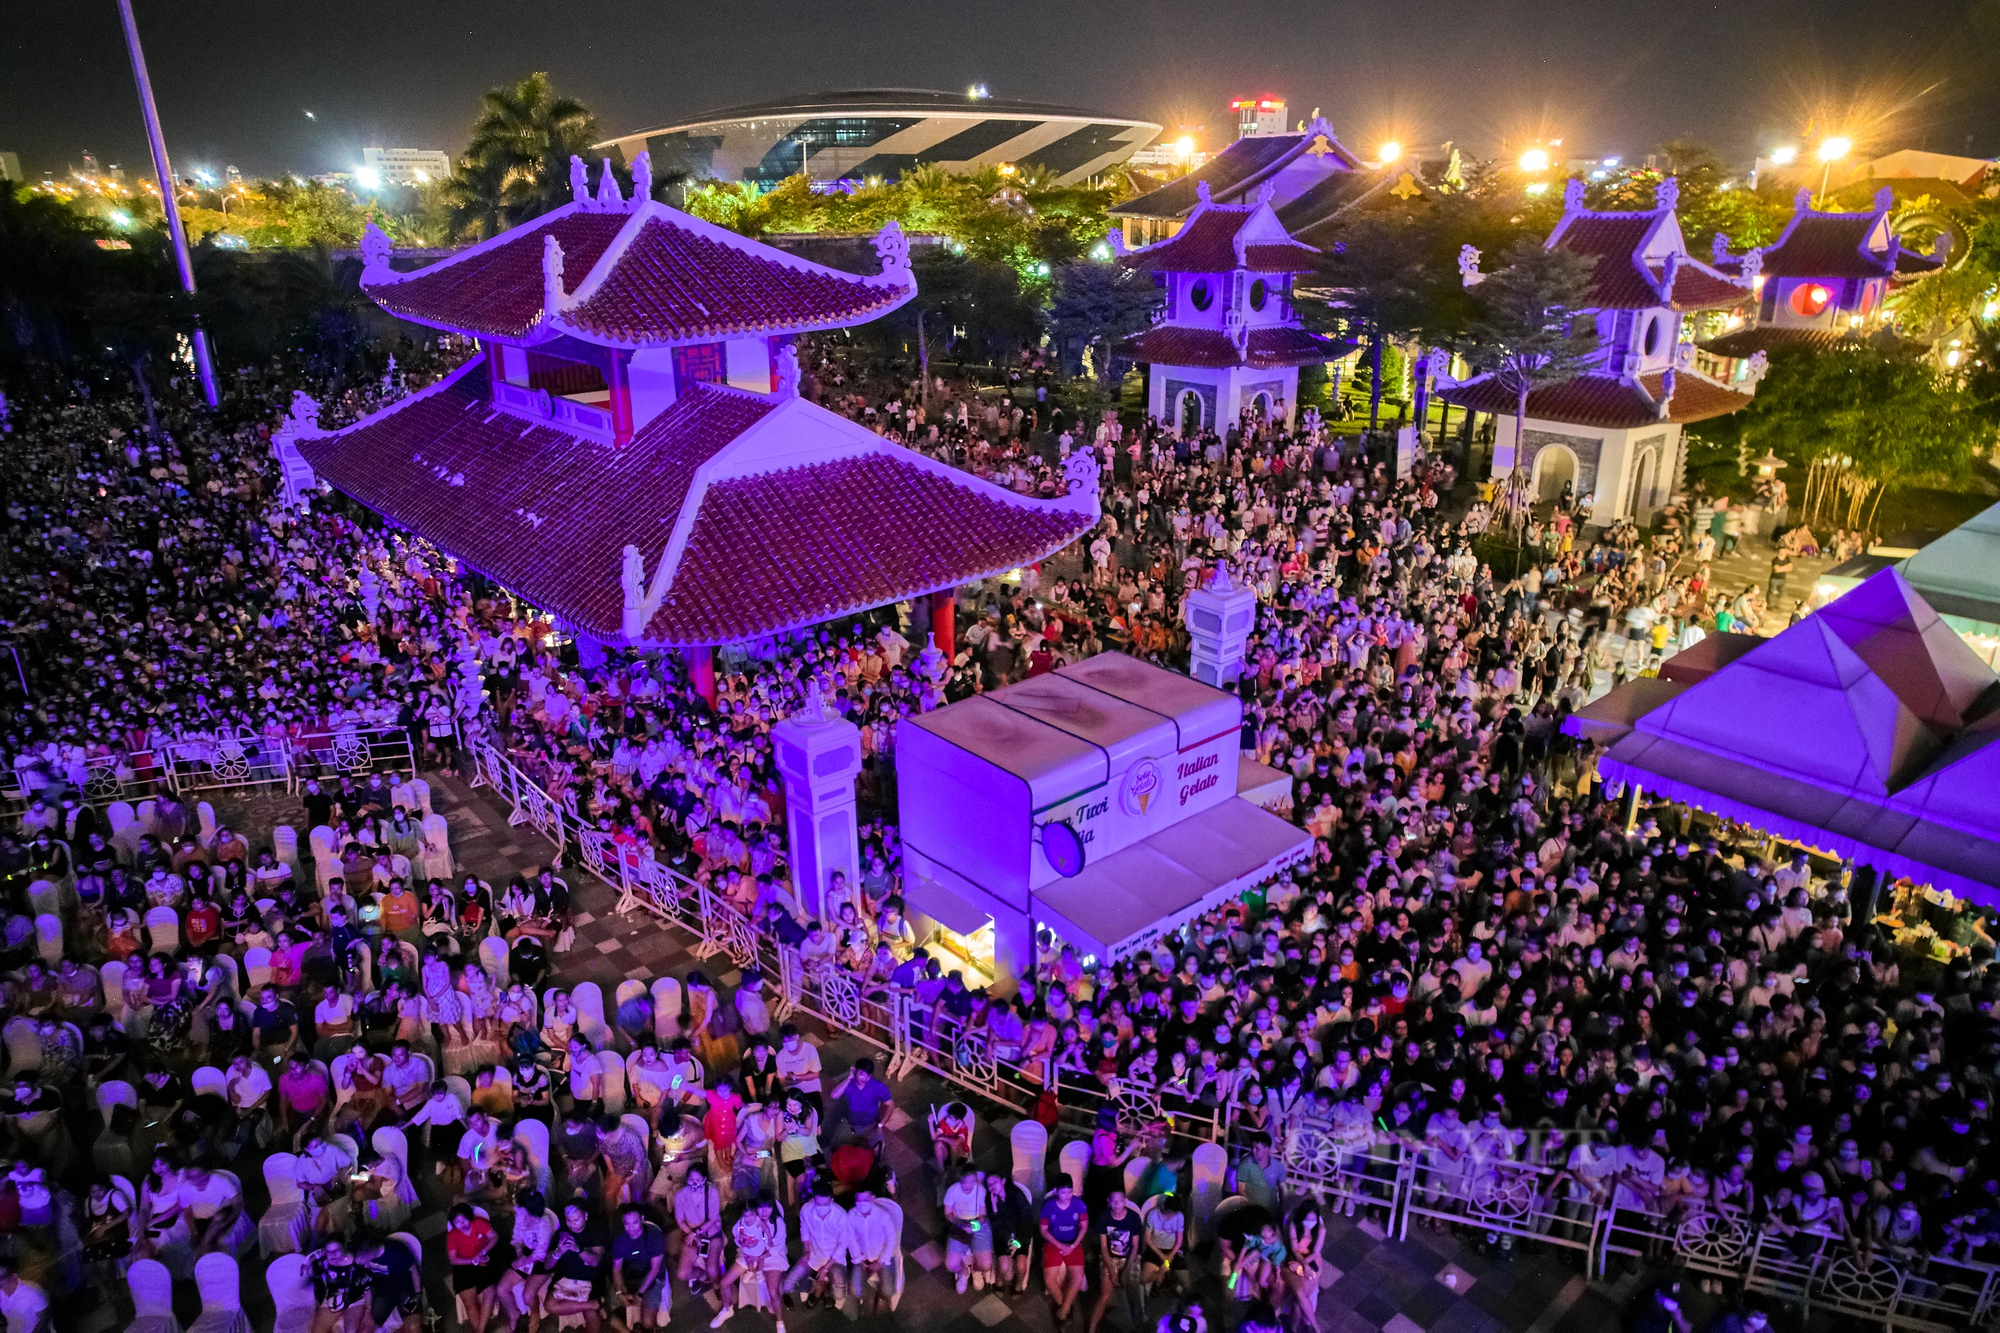 20 ngàn khán giả bùng nổ với đại nhạc hội quy mô lớn tại Đà Nẵng - Ảnh 2.